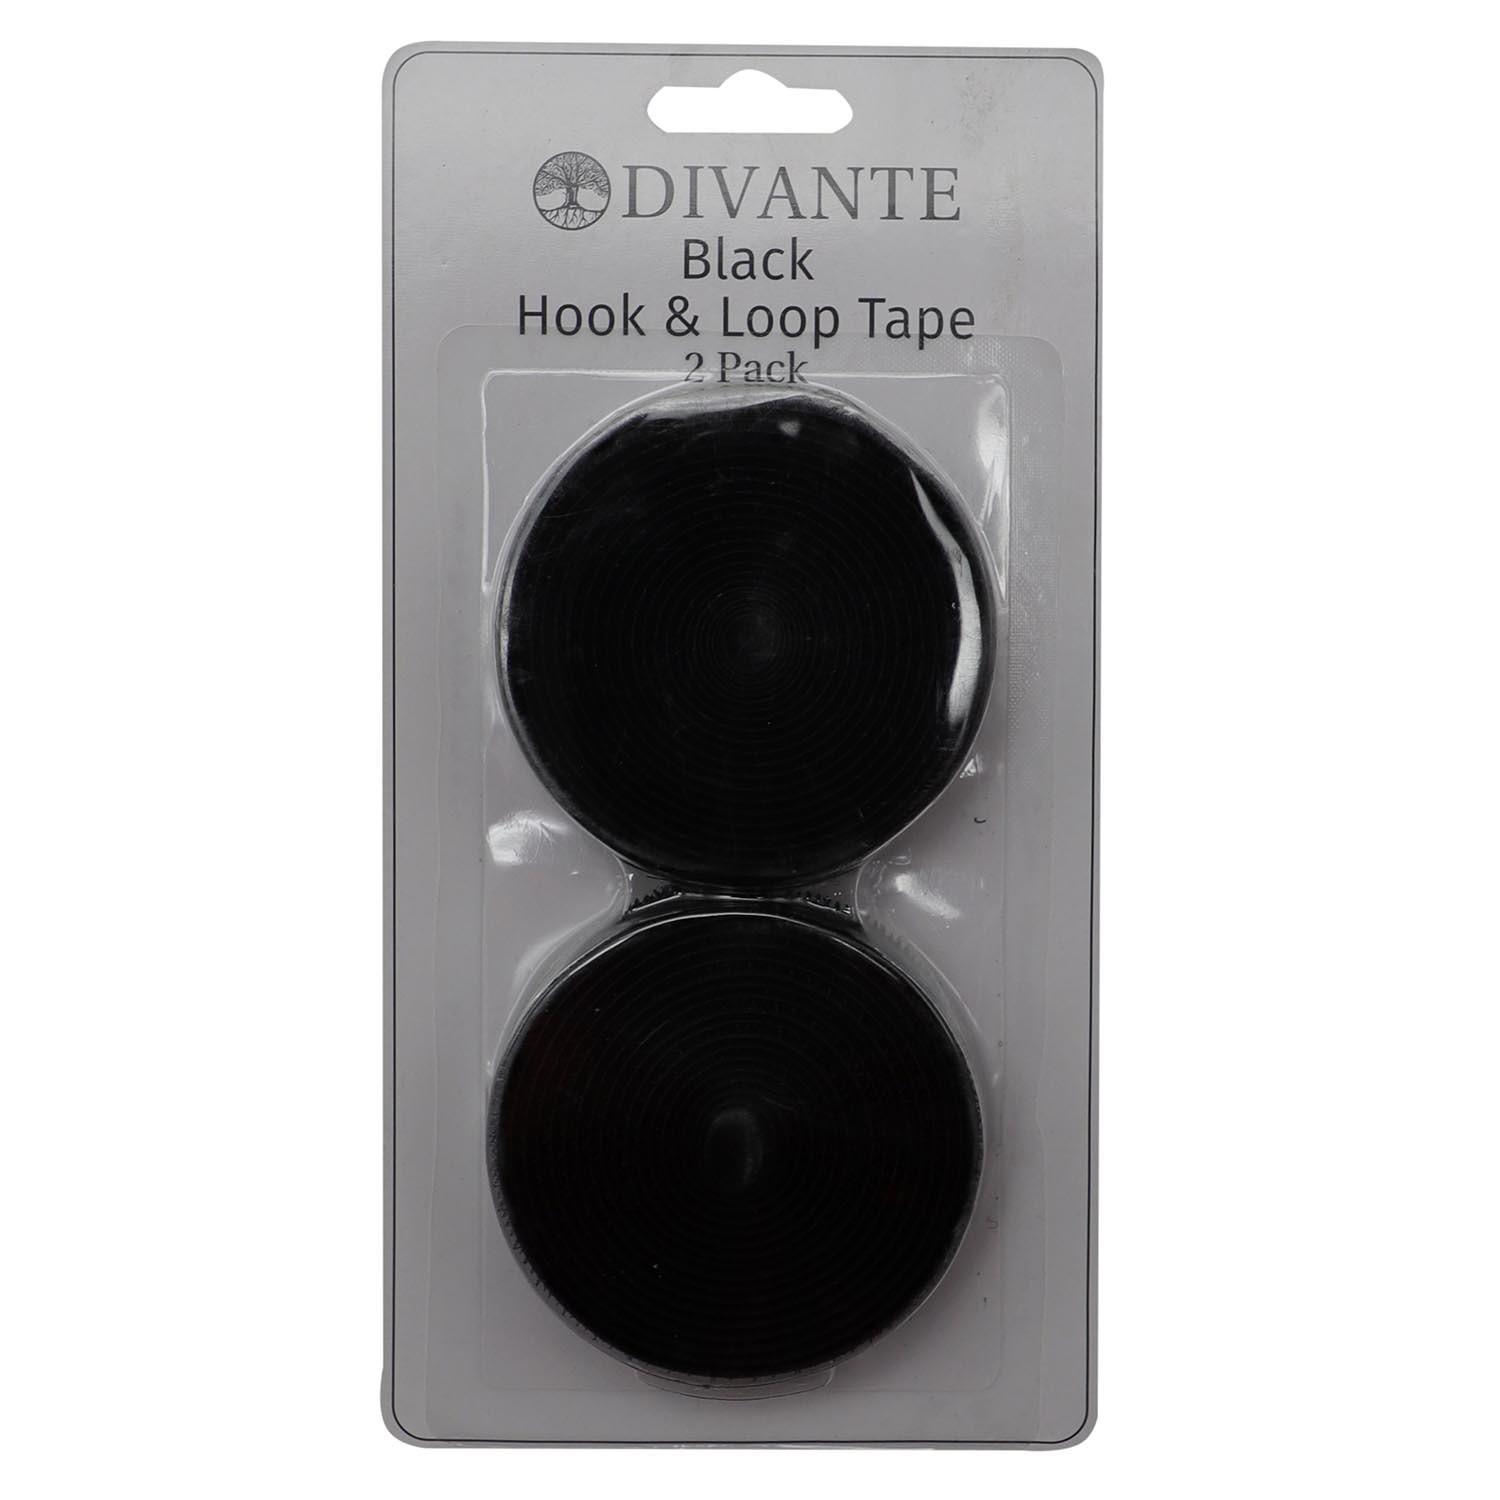 Divante Black Hook and Loop Tape 2 Pack Image